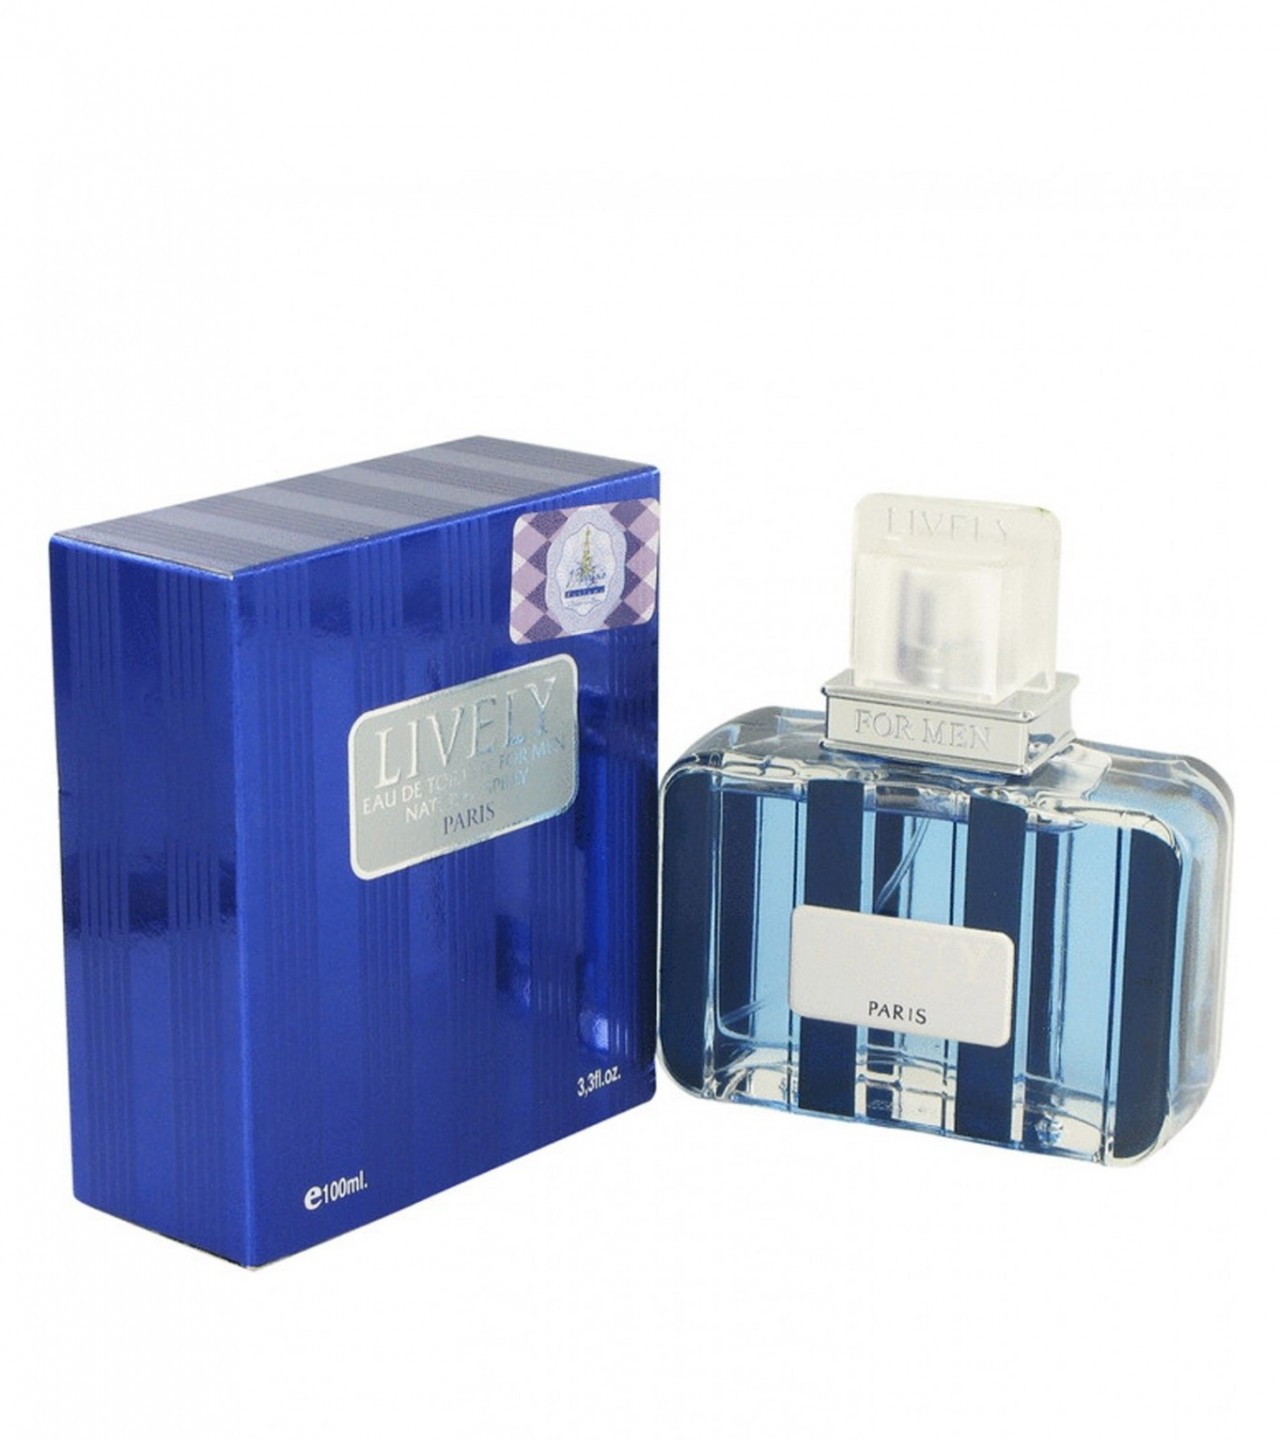 Lively Perfume For Men – Eau de Toilette – 100 ml